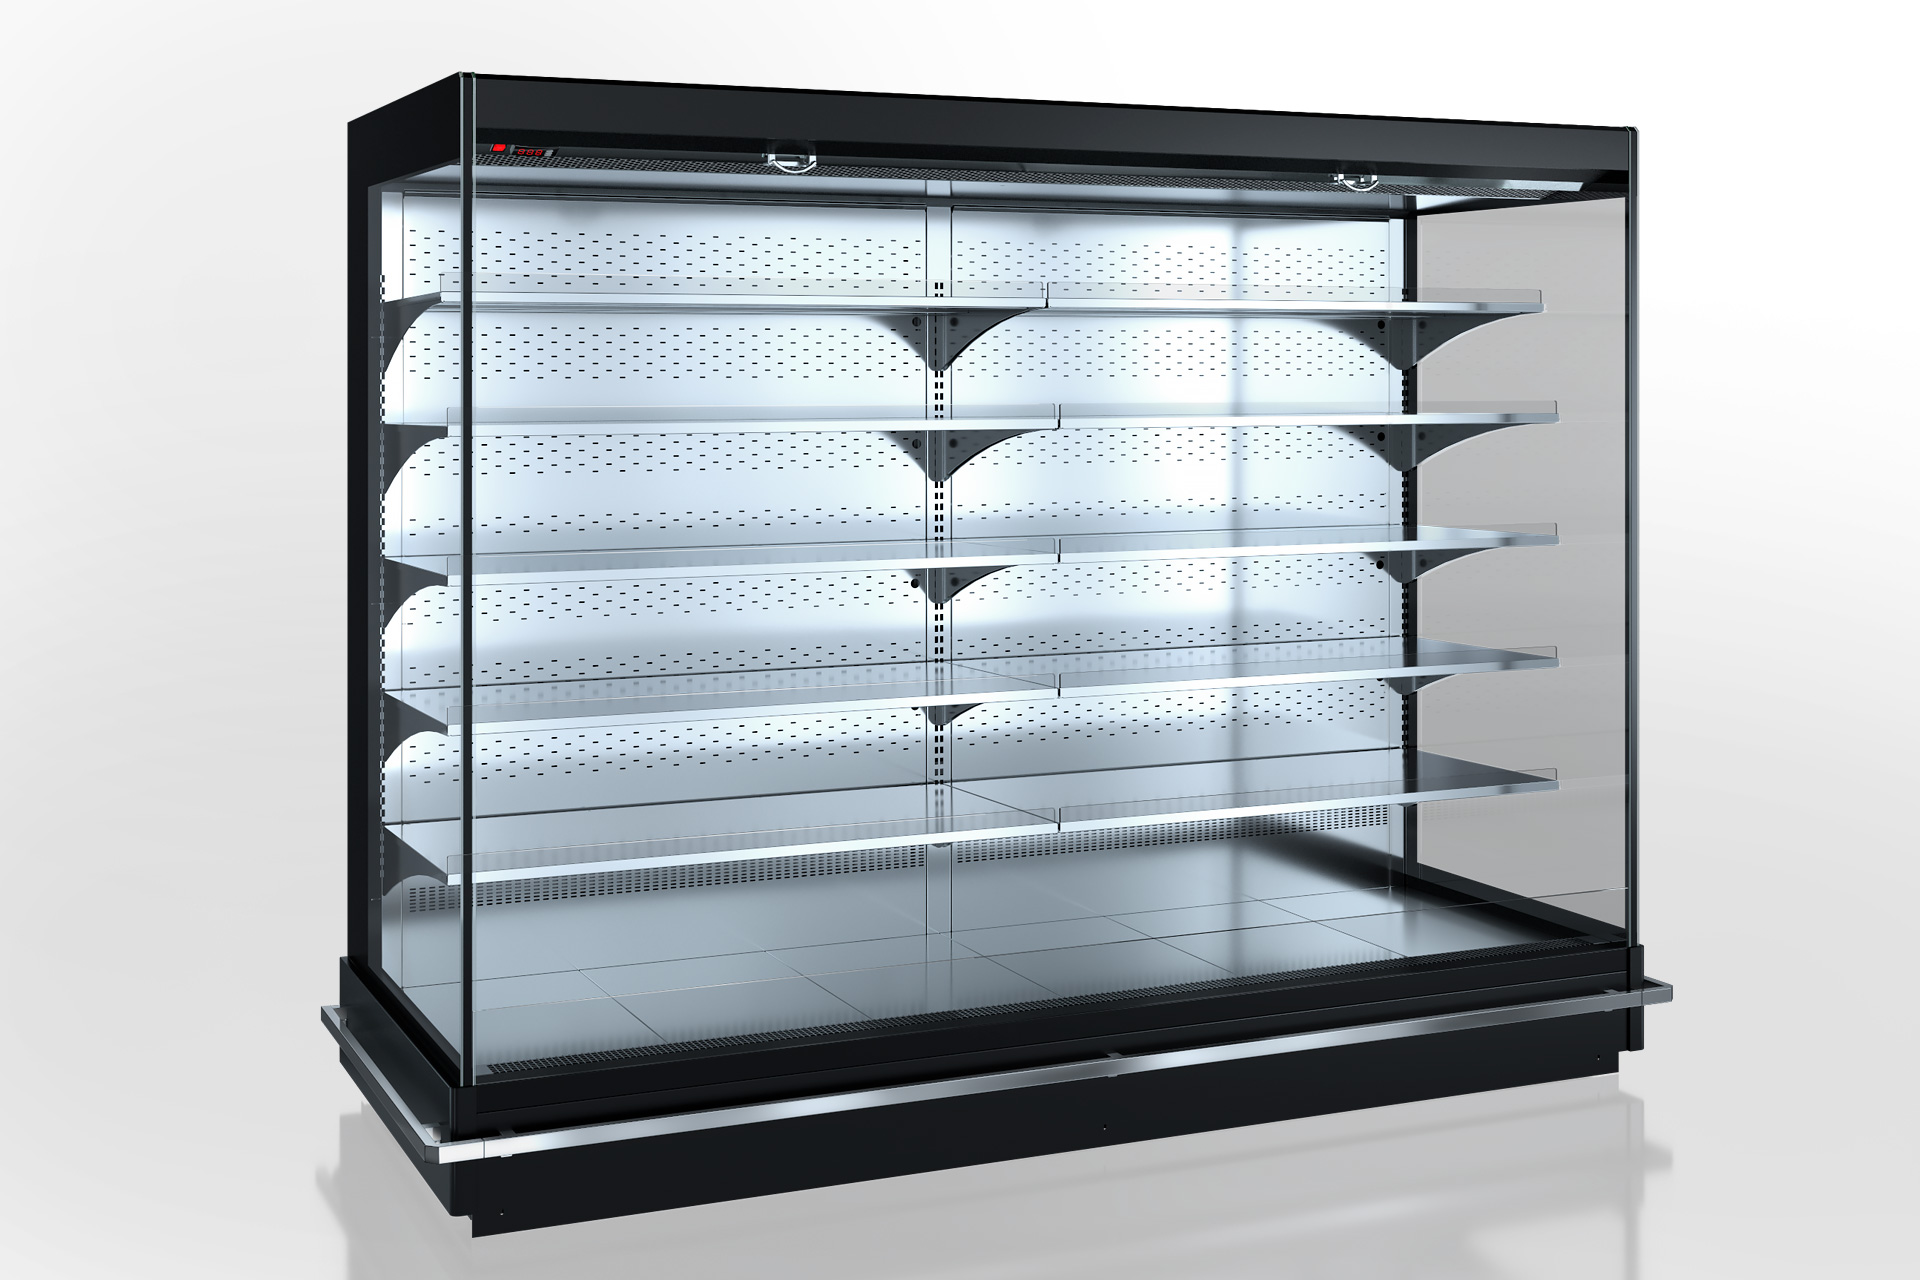 Refrigerated multideck cabinets</p>
<div>Indiana optima MV 105 MT O 205-DLM</div>
<div>(option)</div>
<p>